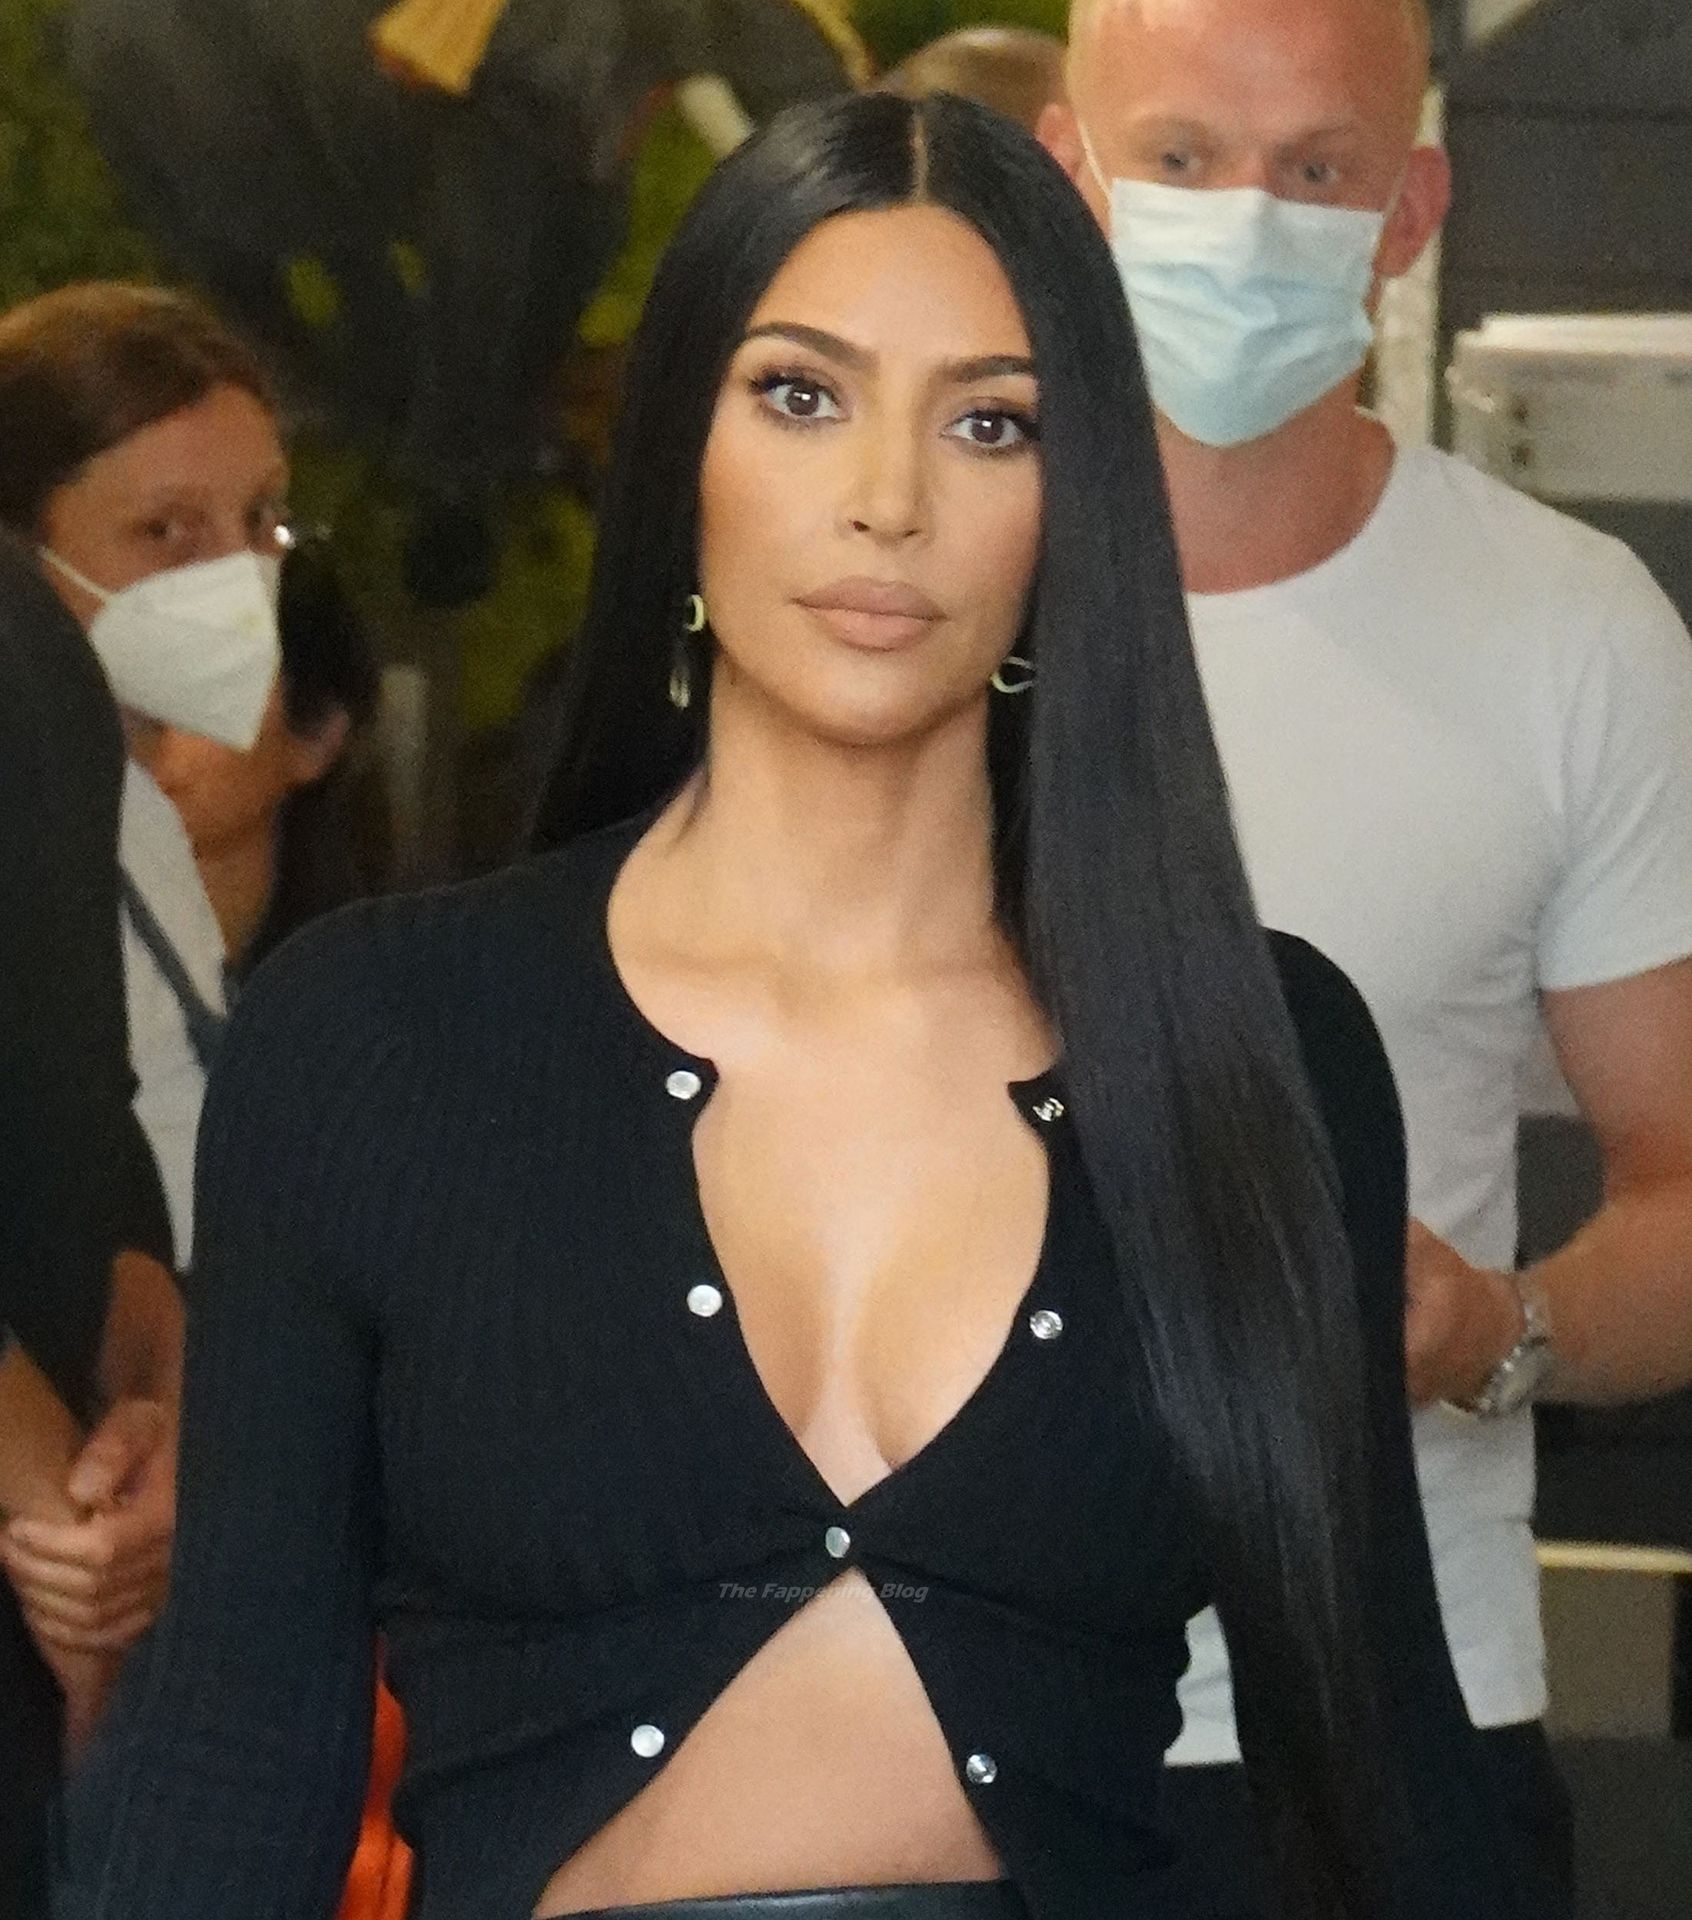 Kim-Kardashian-Sexy-The-Fappening-Blog-4-2.jpg